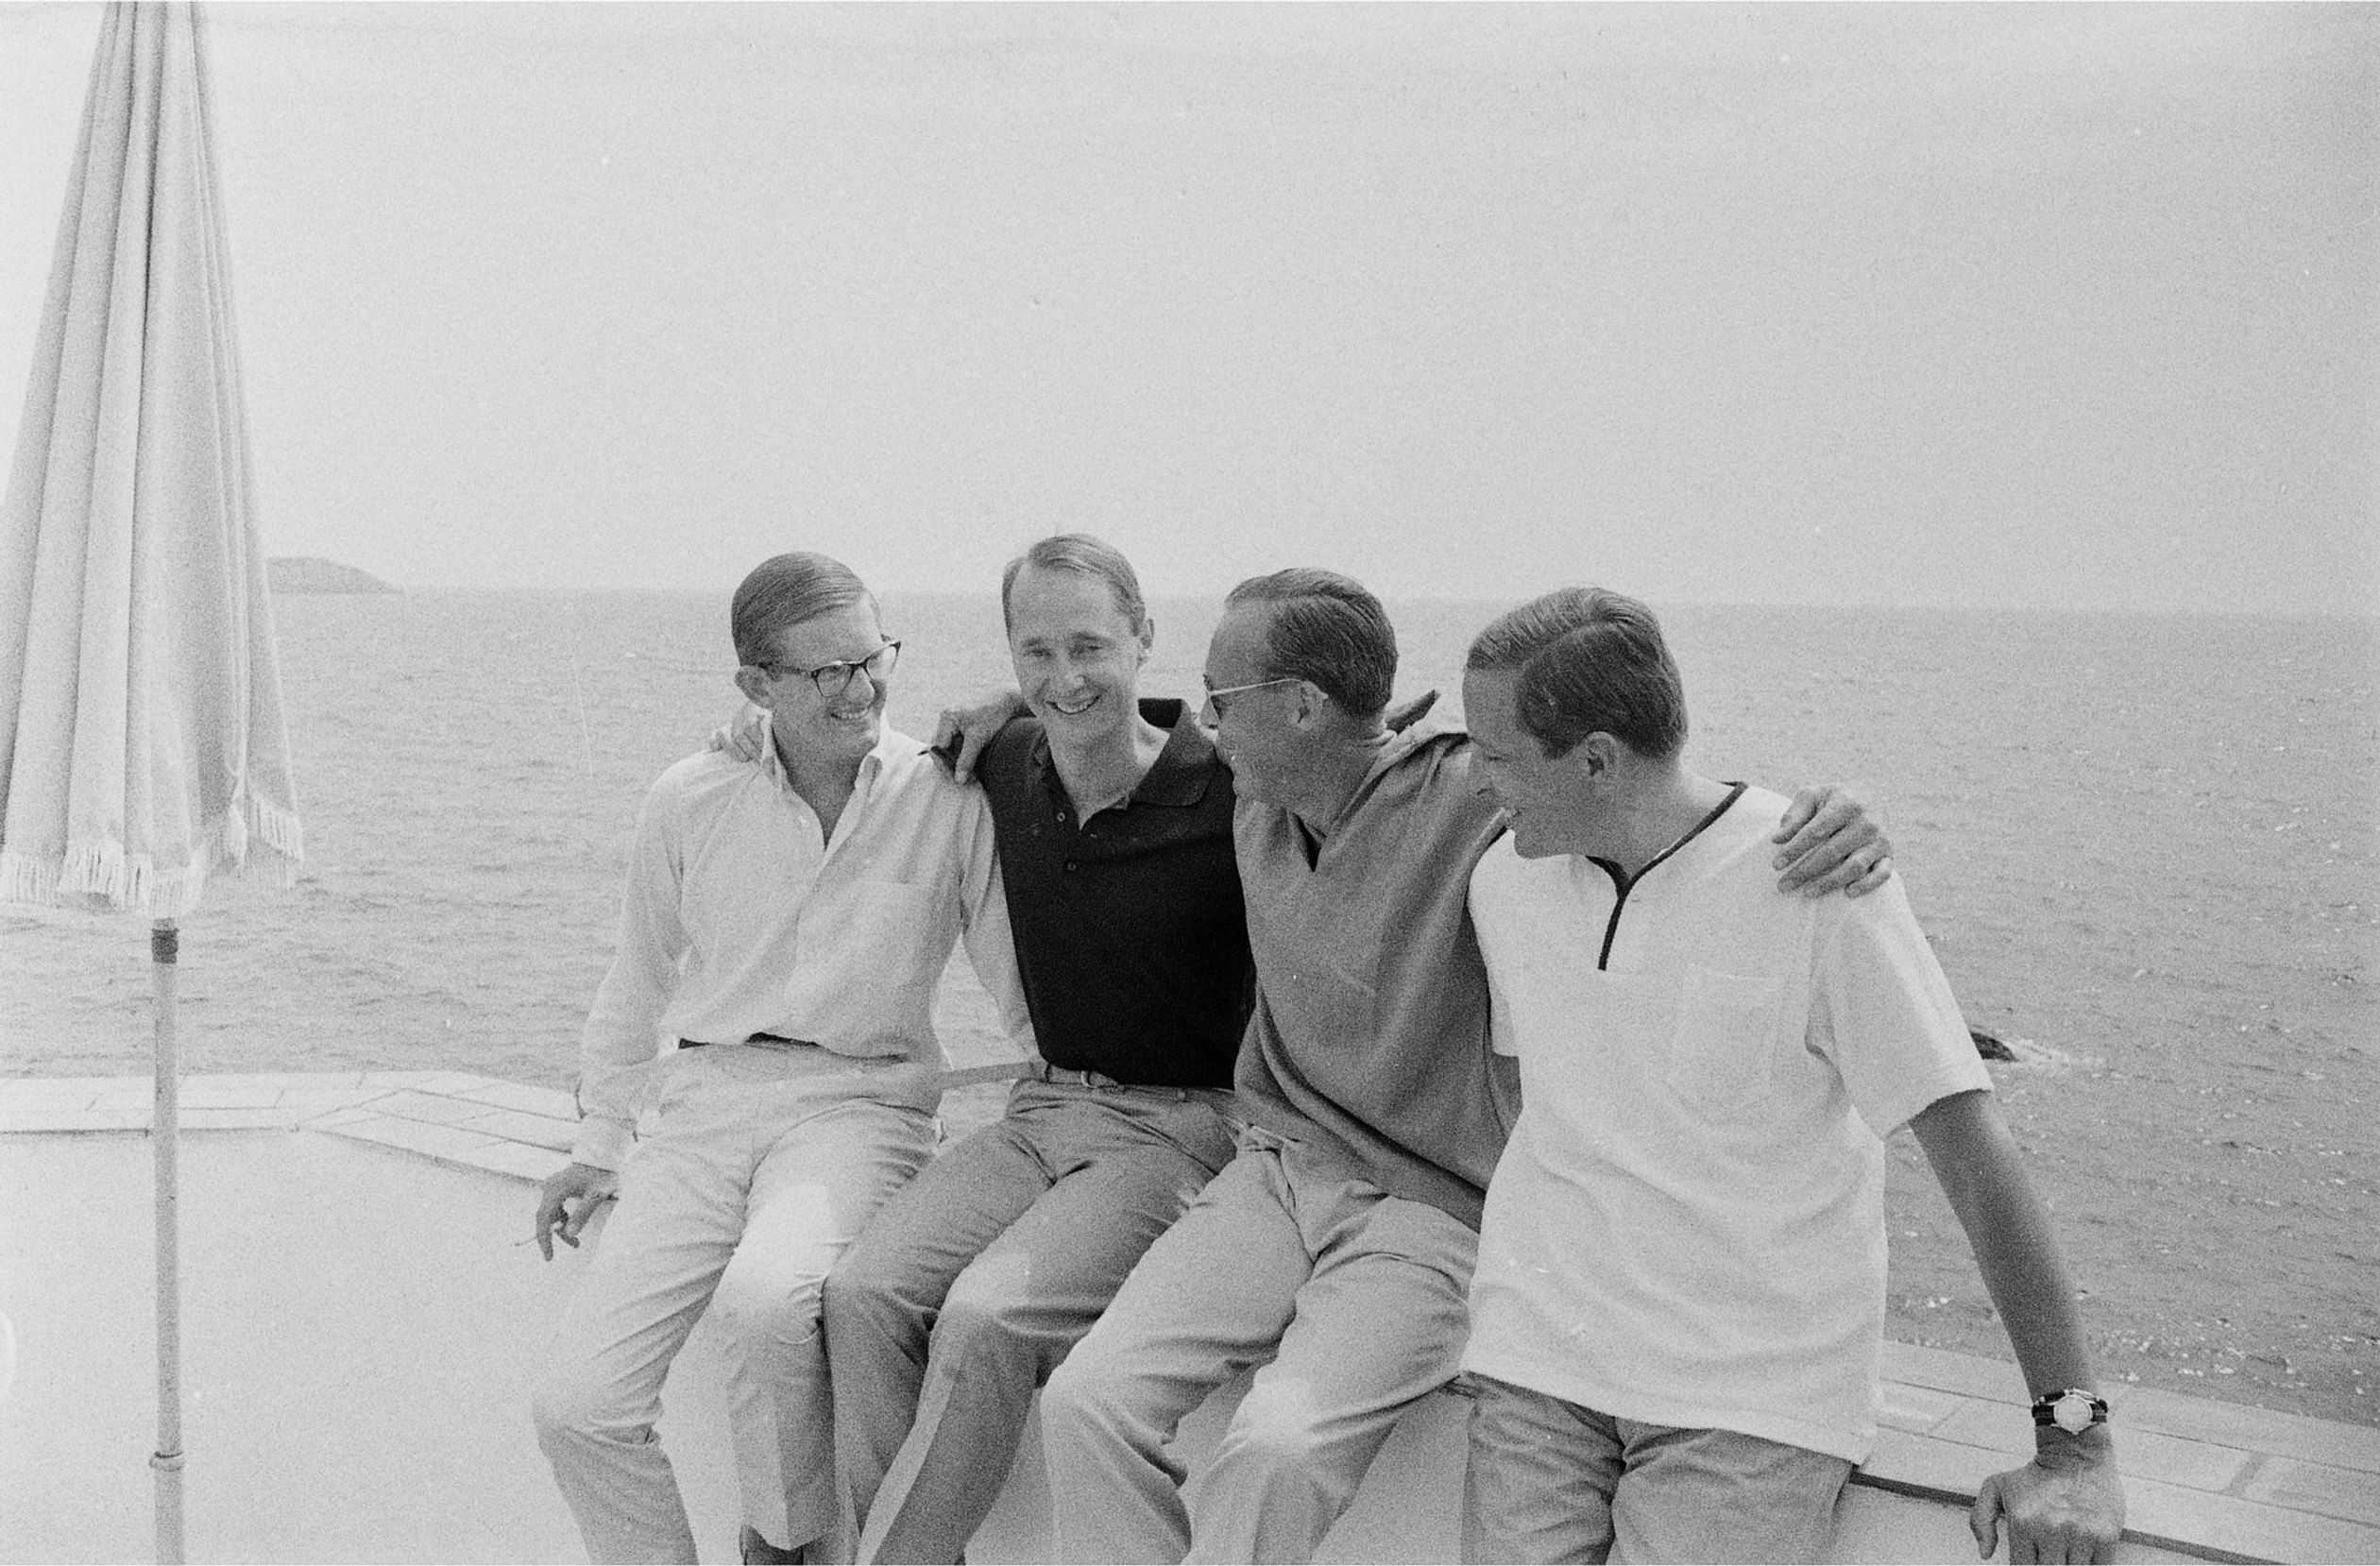 Dit is Porto Ercole, 1966. We zien van links naar rechts prof. mr. Pieter van Vollenhoven, prins